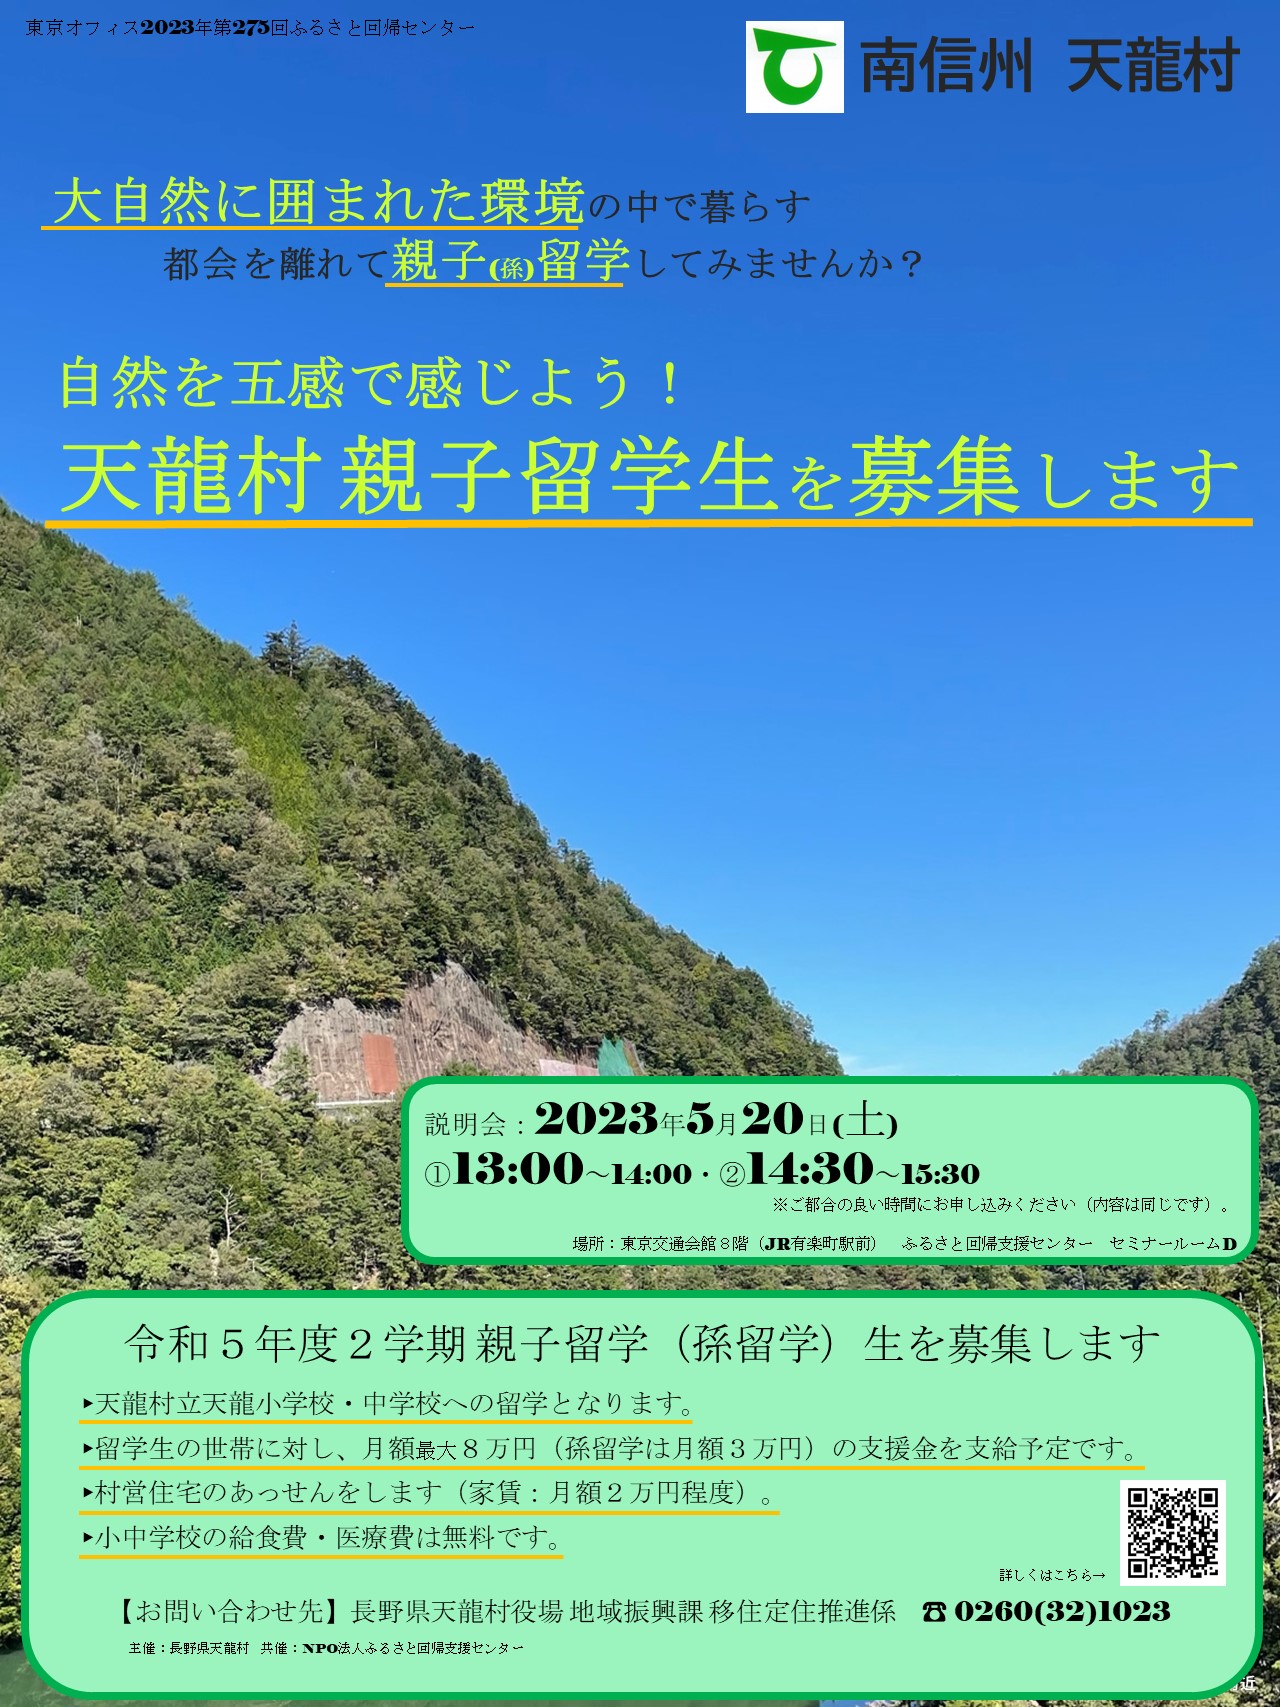 自然を五感で感じよう！天龍村親子留学募集セミナー | 移住関連イベント情報